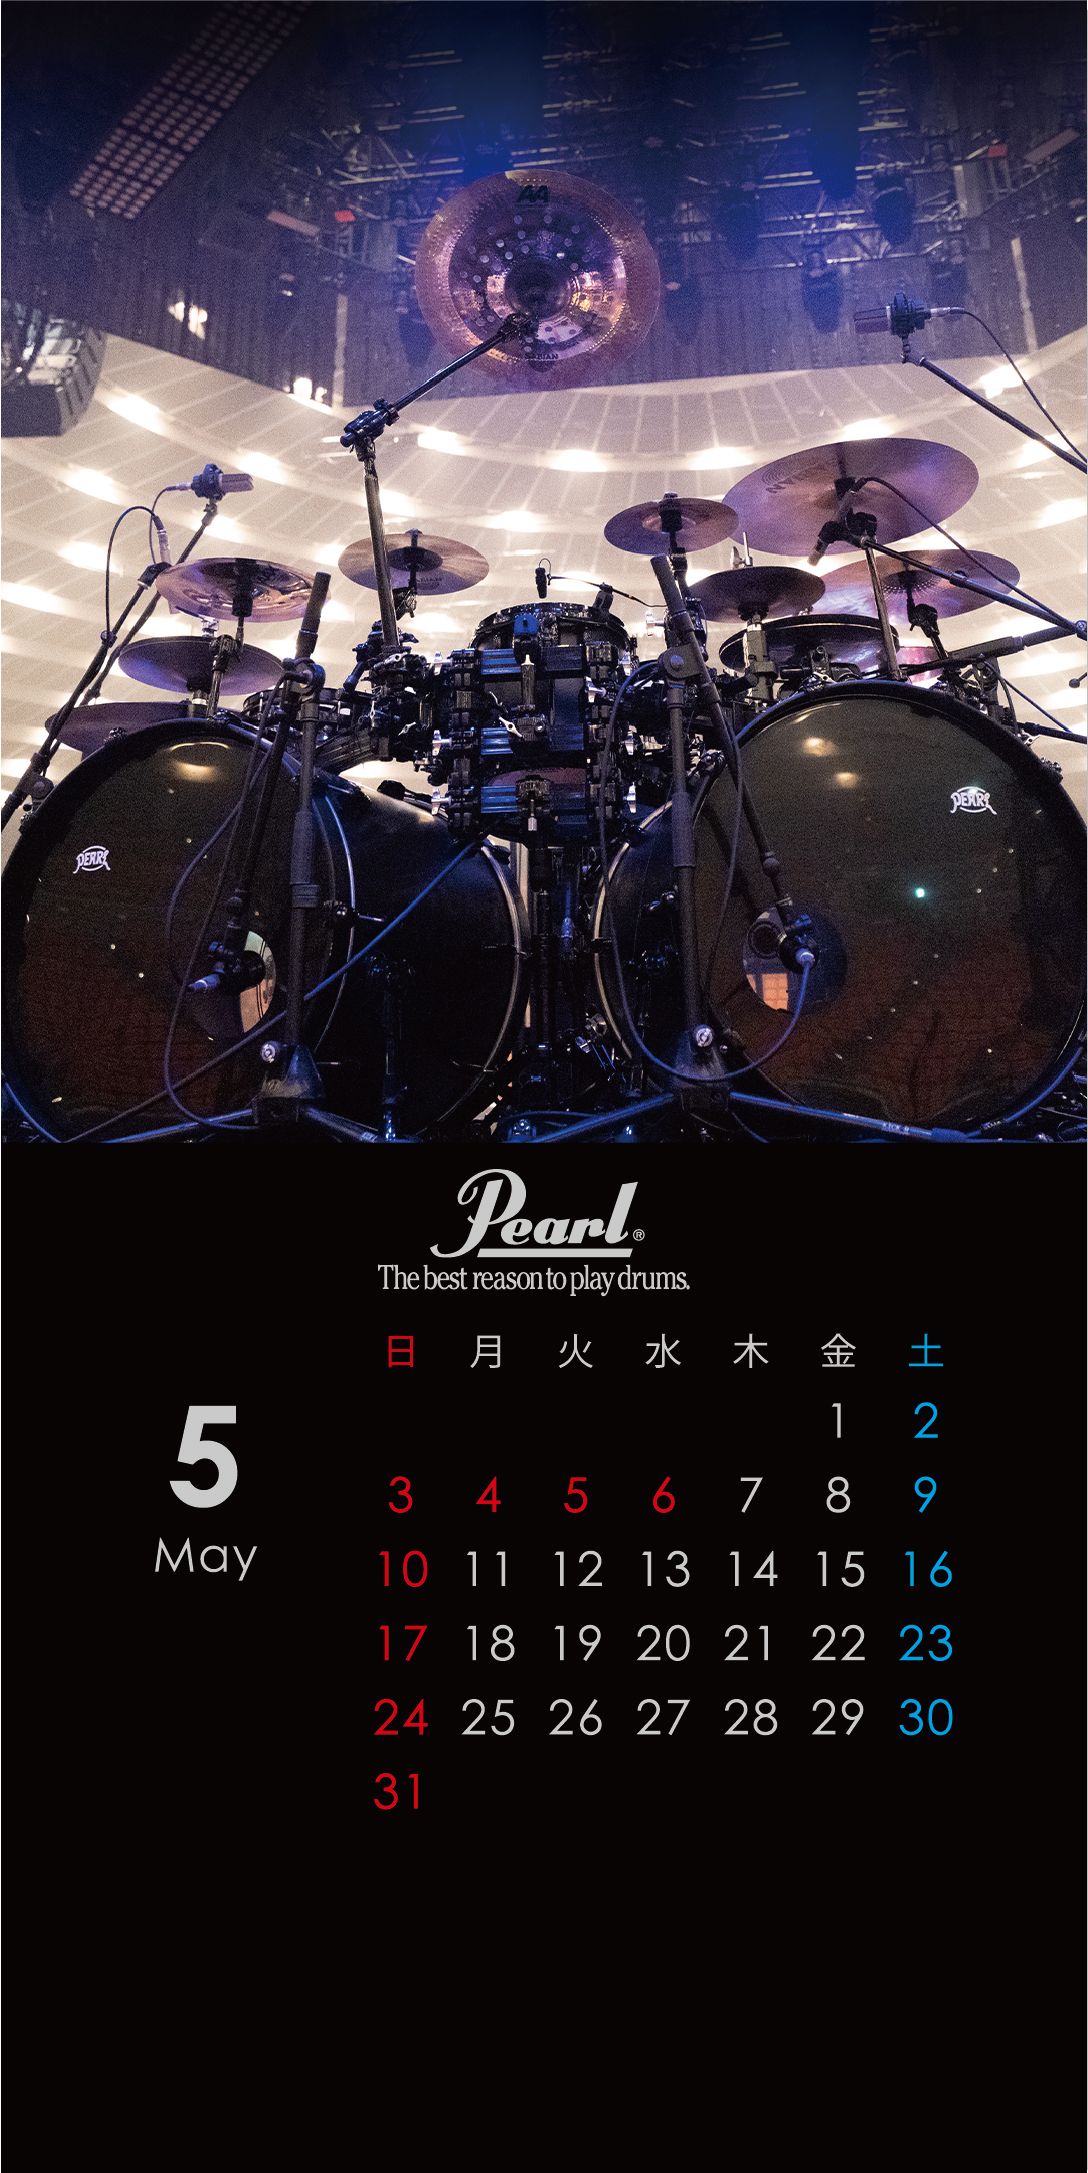 パール楽器製造株式会社 On Twitter スマホ壁紙 5月 アーティスト ドラムセット をカレンダーにしたスマホ壁紙を毎月1日に配信致します 5月はyukihiroさん L Arc En Ciel のドラムセットです Https T Co 64jyhqkya6 Twitter